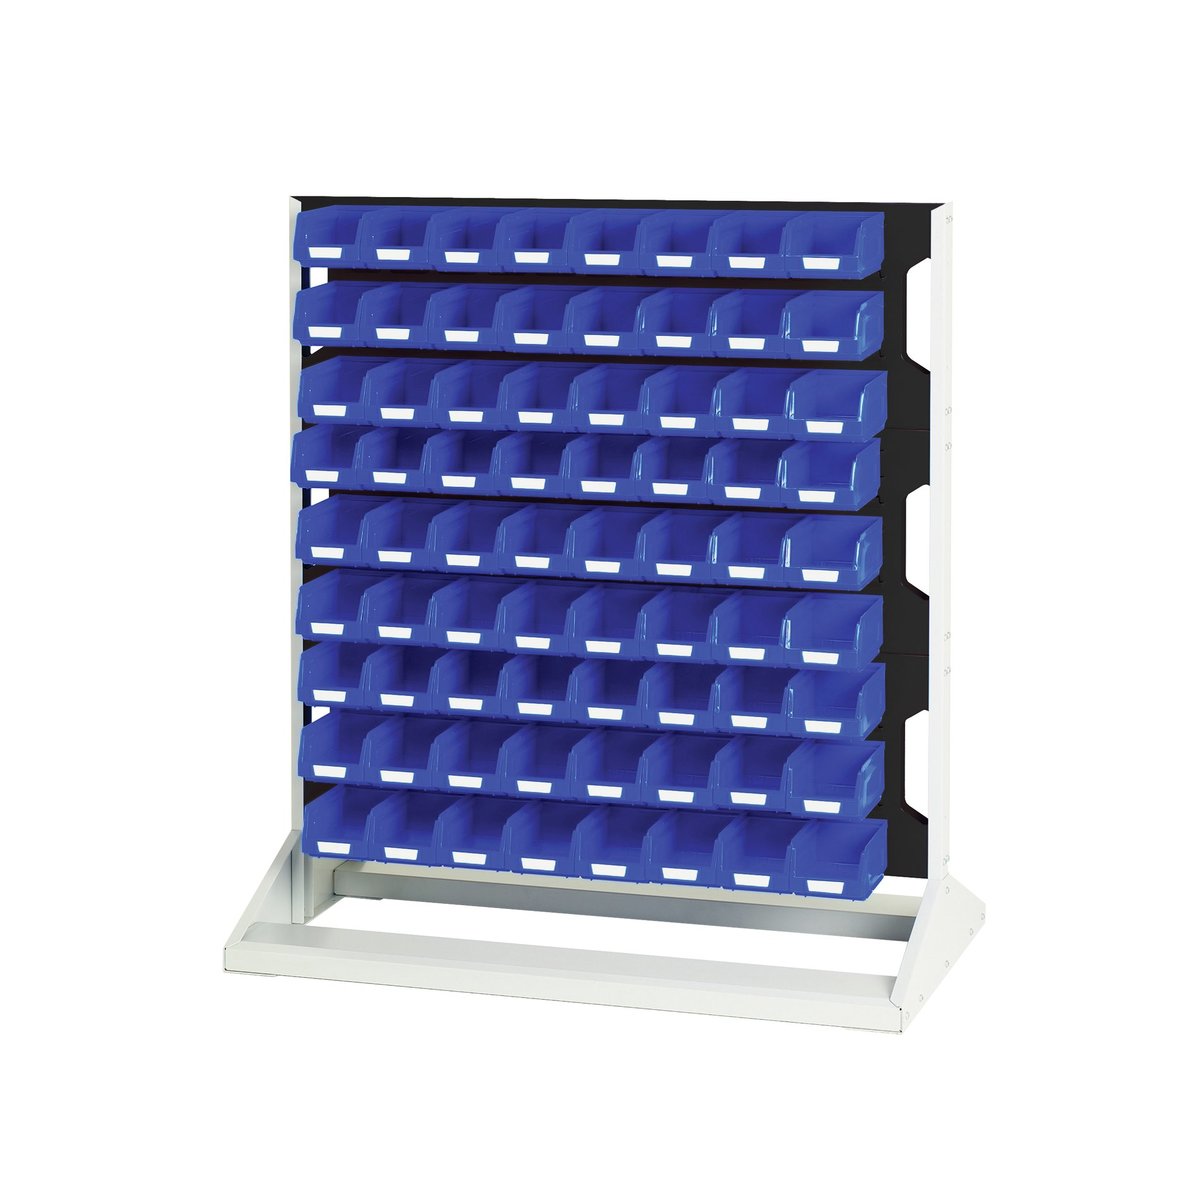 16917322. - Louvre panel rack single sided & bin kit